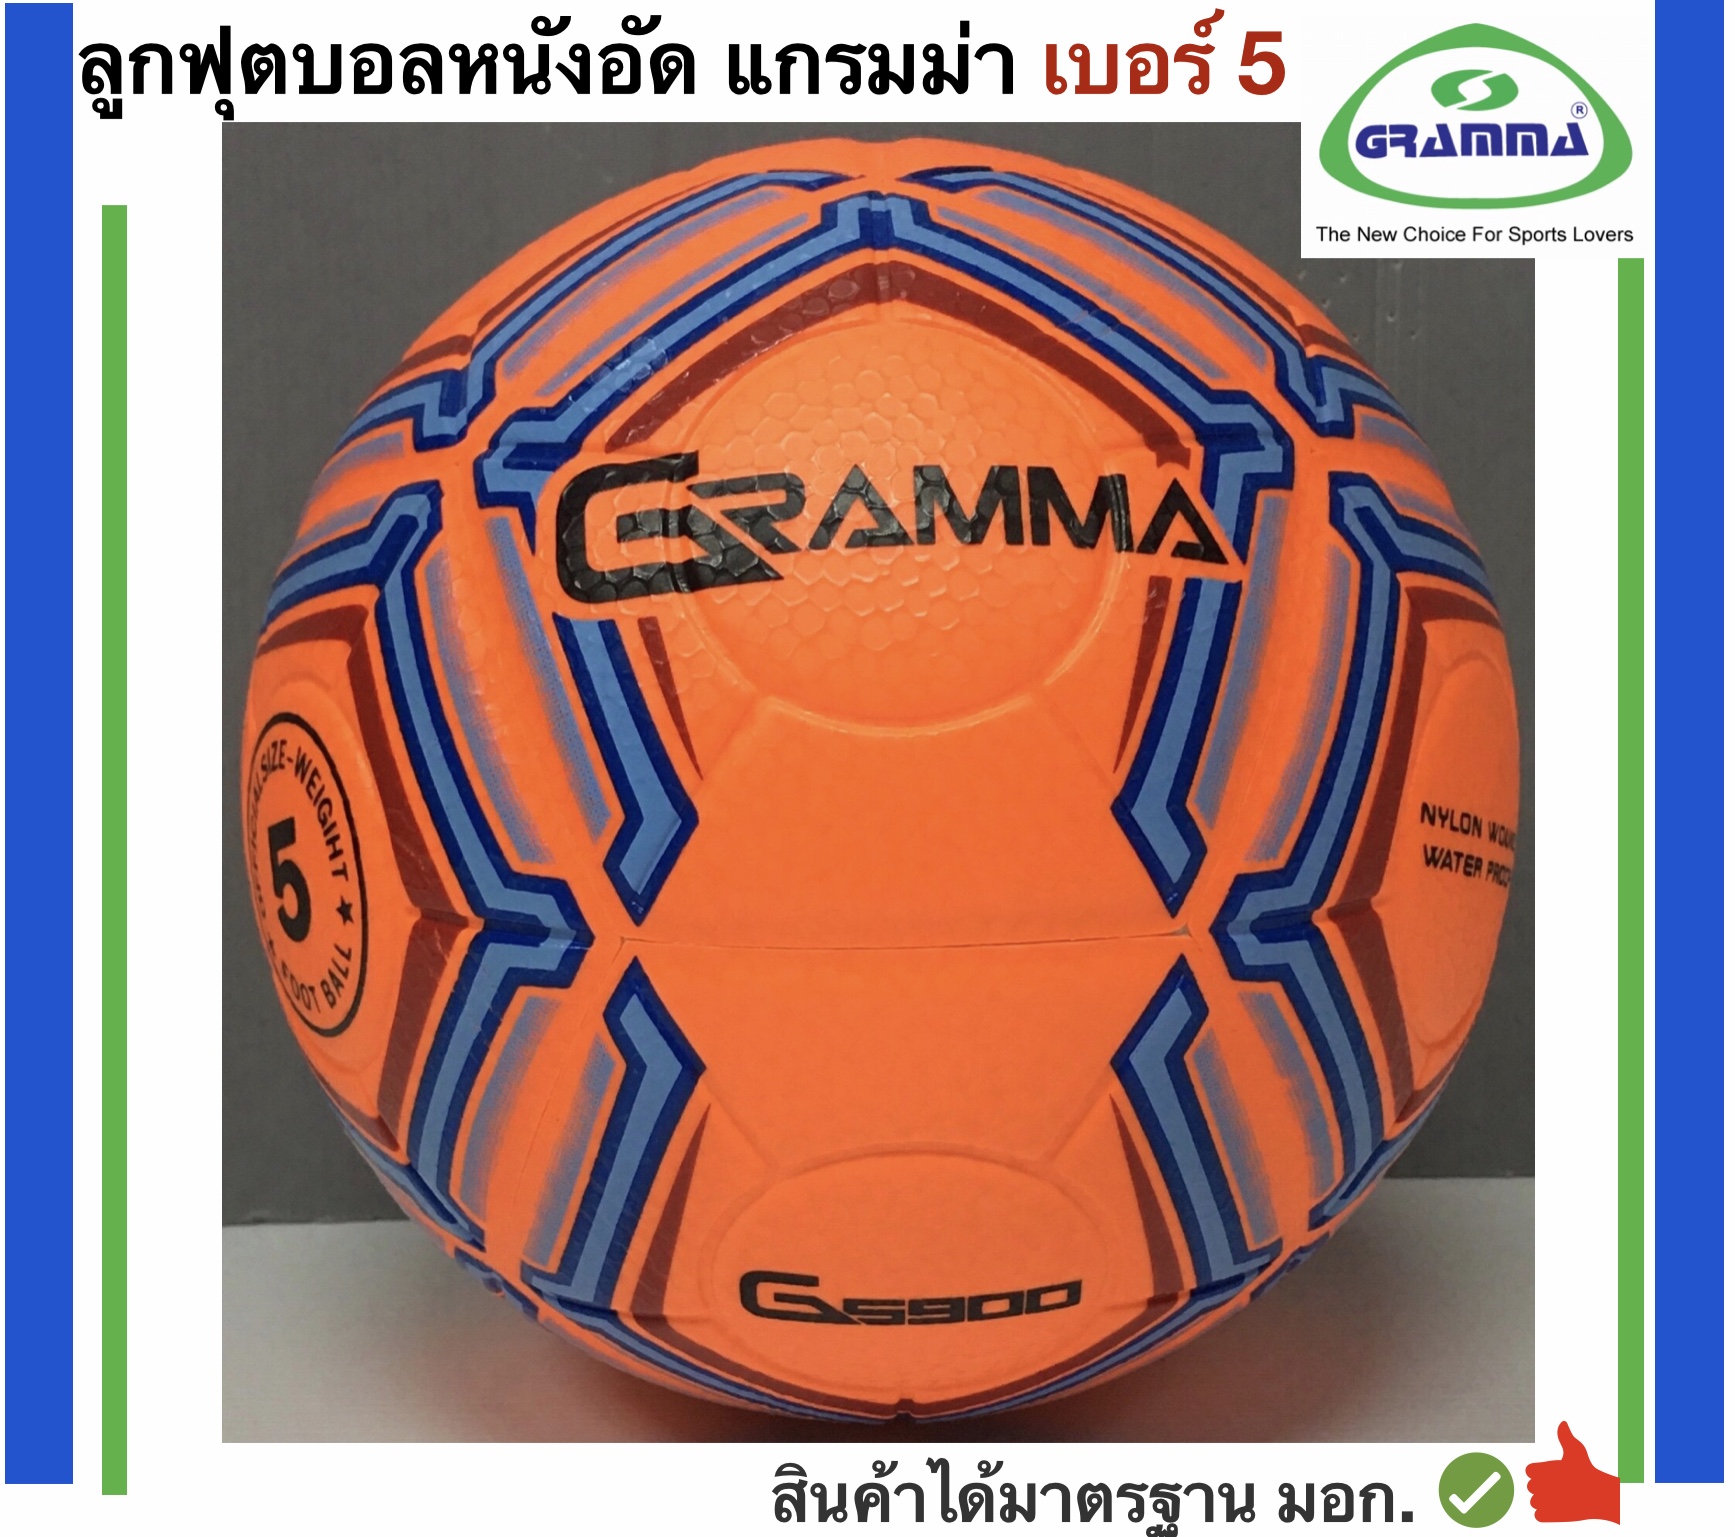 มุมมองเพิ่มเติมของสินค้า Gramma Sport ลูกฟุตบอลหนังอัด รุ่นสี เบอร์ 5 แกรมม่า แถมฟรี ตาข่ายใส่ลูกบอลและเข็มสูบลม